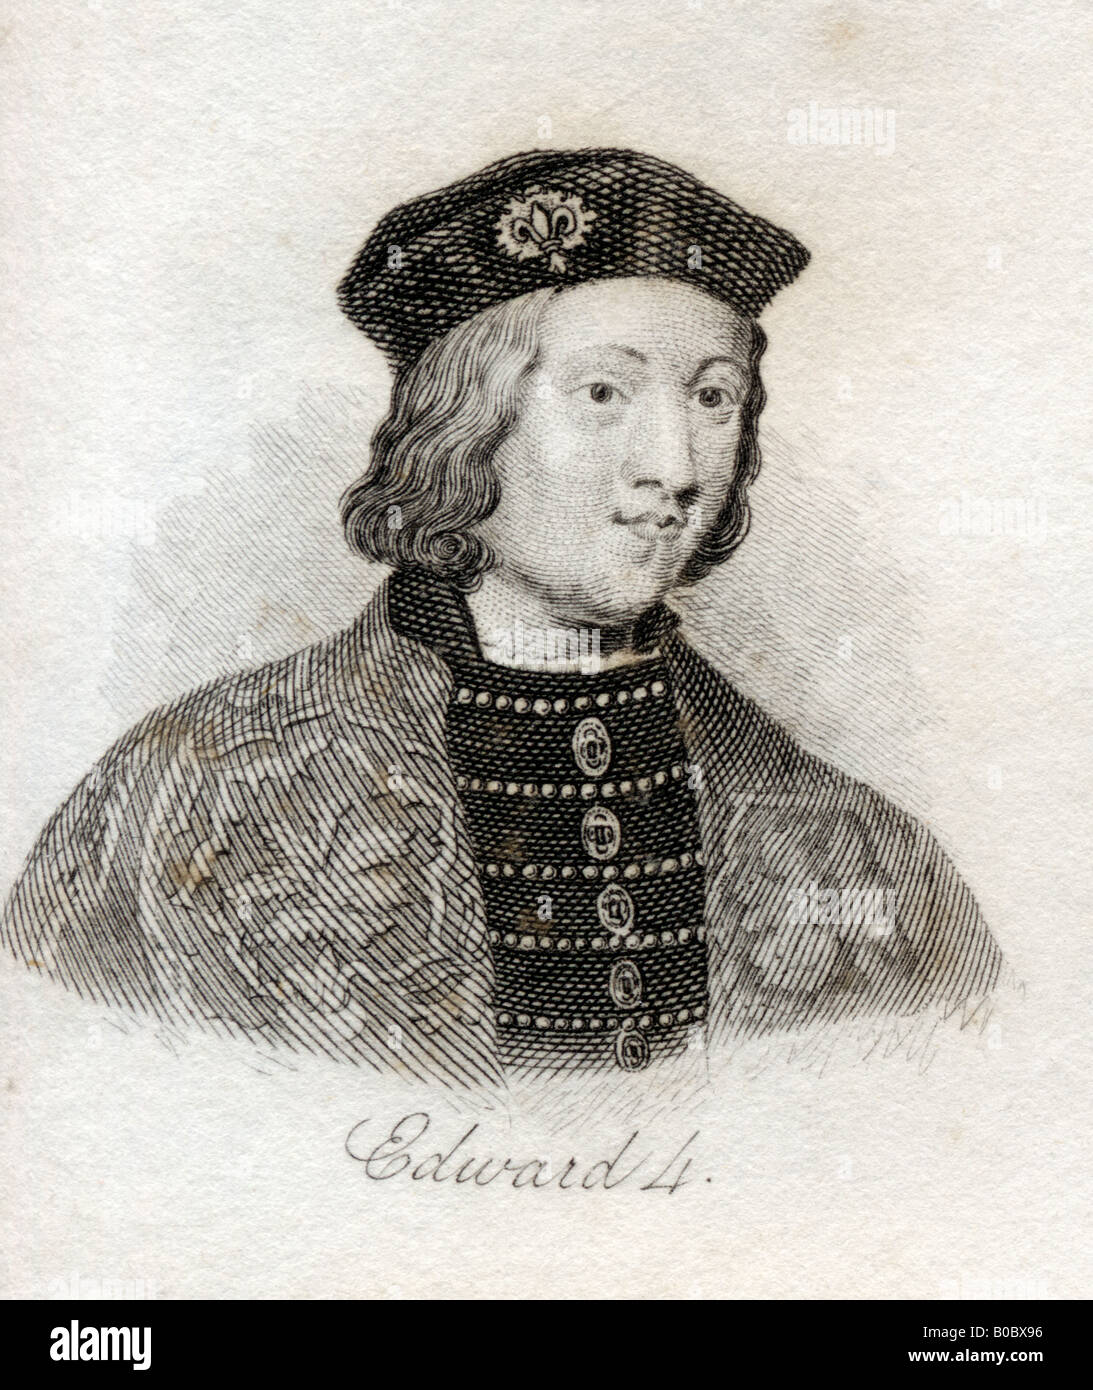 Edward IV., 1442 - 1482. König von England. Aus dem Buch Crabbs Historical Dictionary, veröffentlicht 1825. Stockfoto